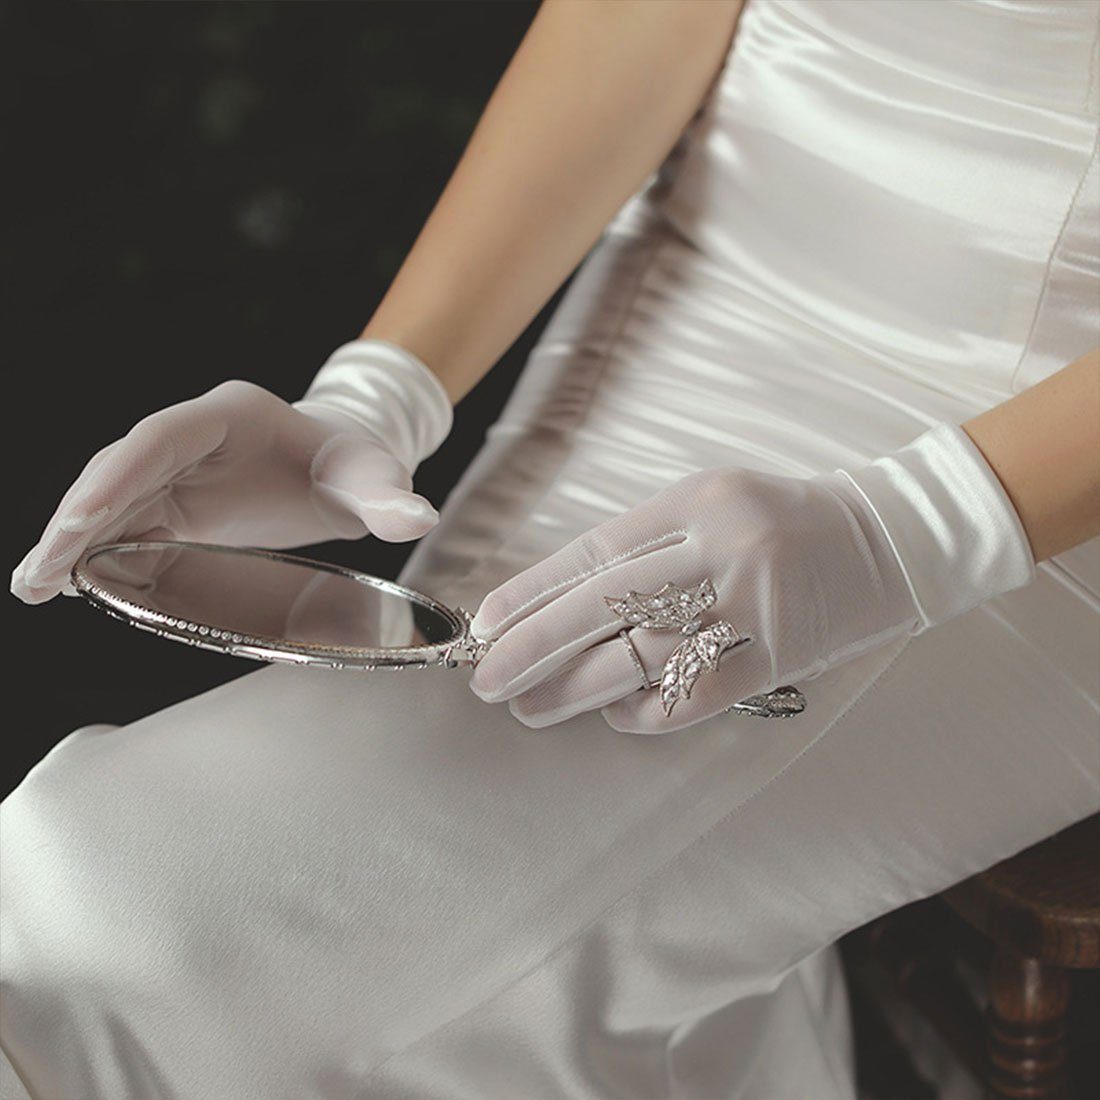 Abendhandschuhe DÖRÖY Handschuhe,Stretch Kleid Satin Premium Handschuhe Braut Hochzeit weiße